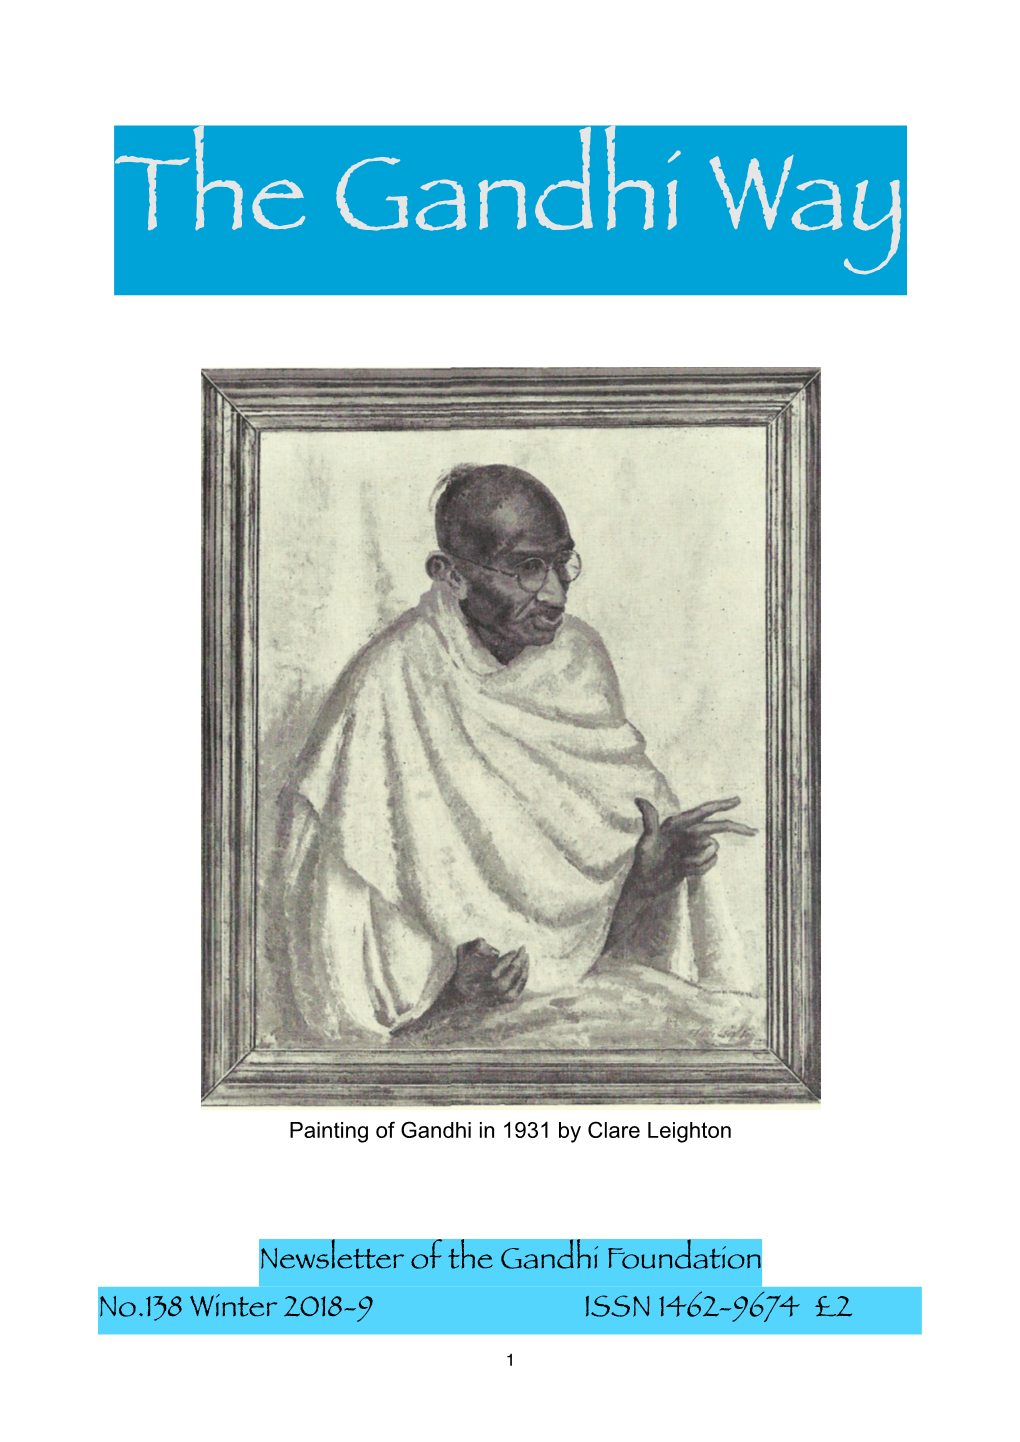 The Gandhi Way